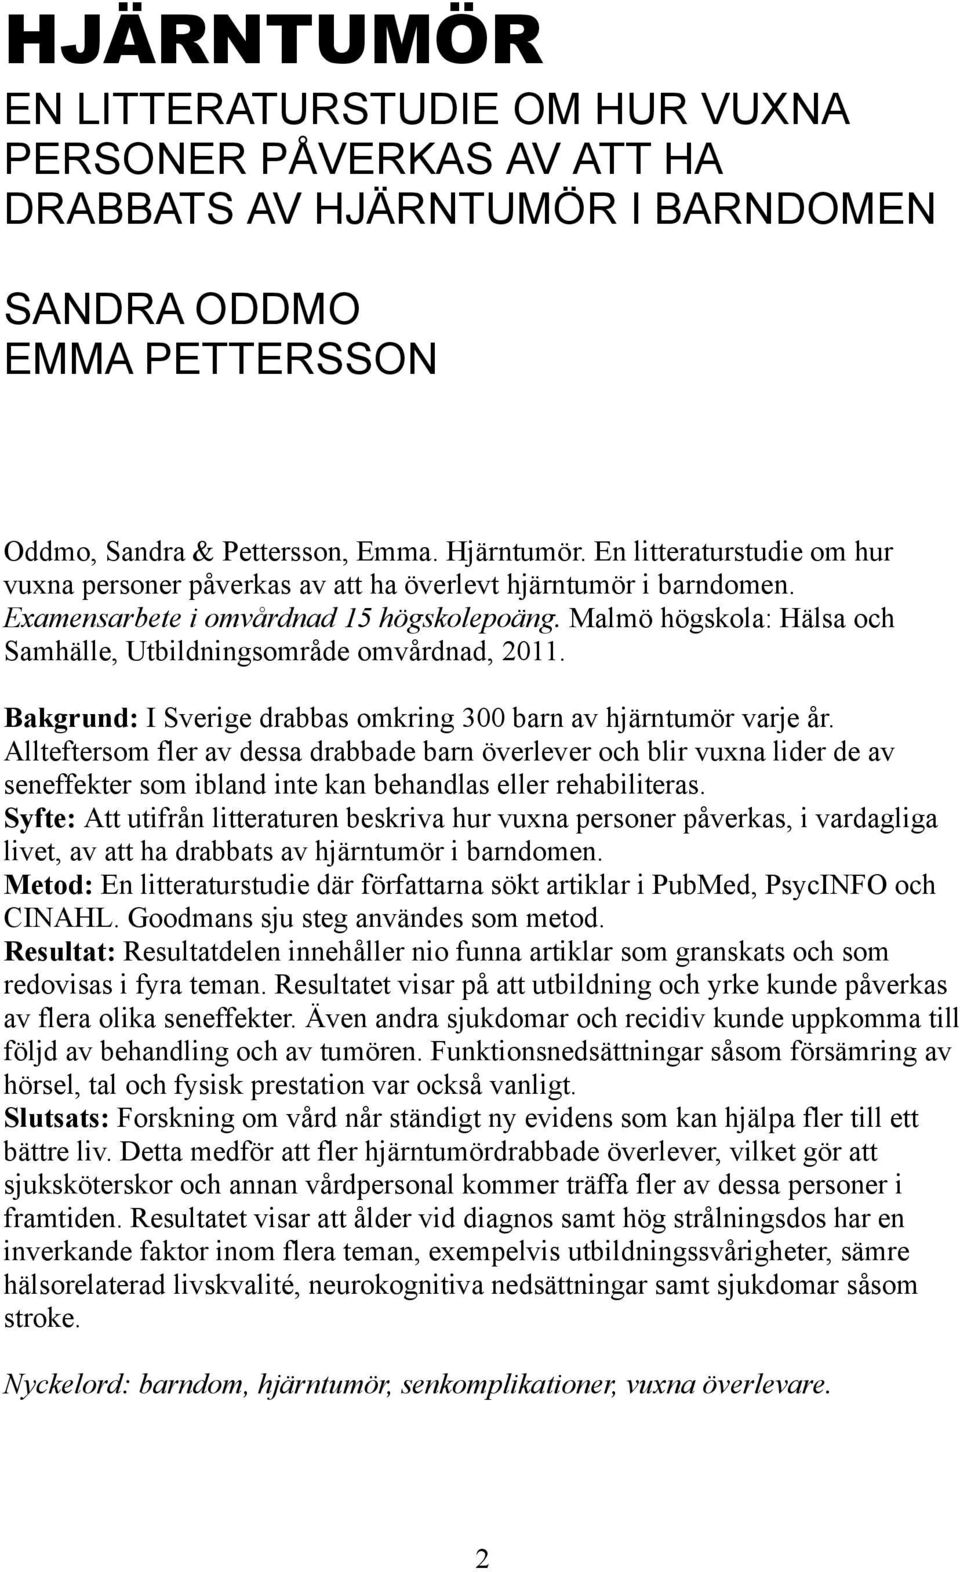 Malmö högskola: Hälsa och Samhälle, Utbildningsområde omvårdnad, 2011. Bakgrund: I Sverige drabbas omkring 300 barn av hjärntumör varje år.